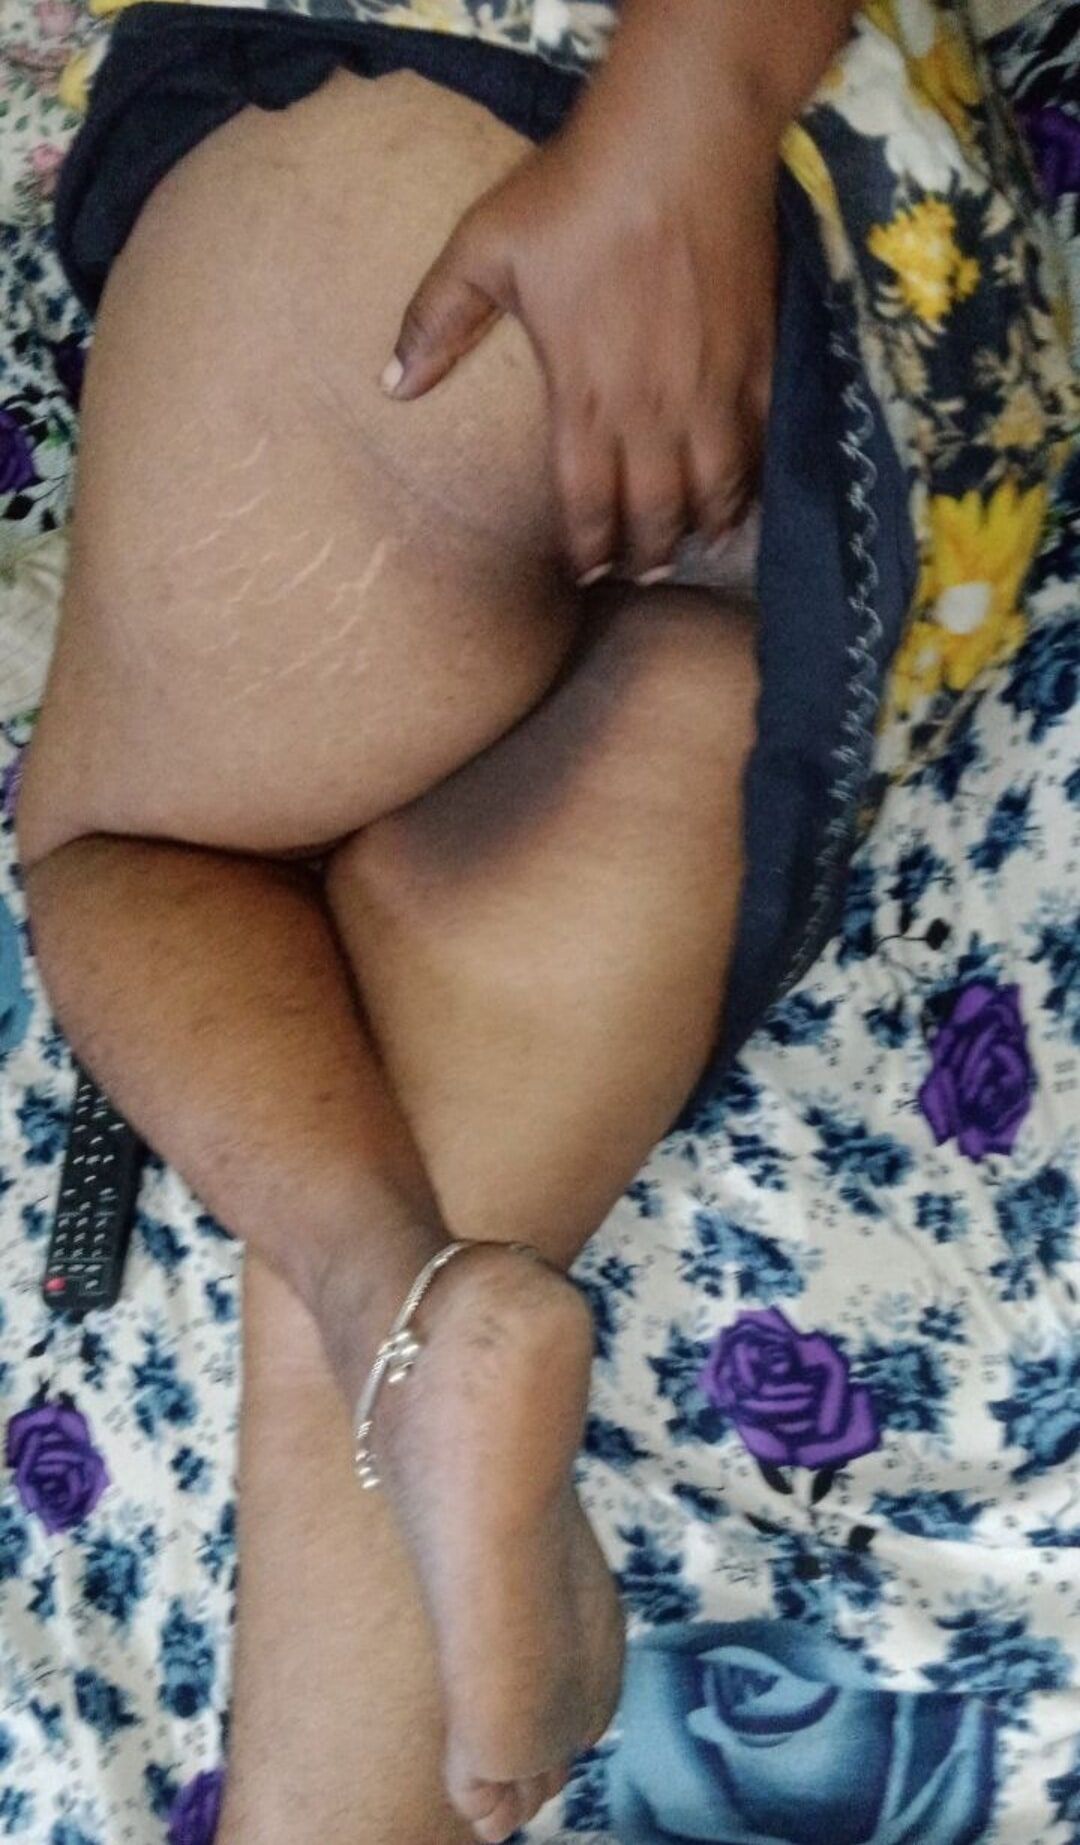 Tamil mom big ass show